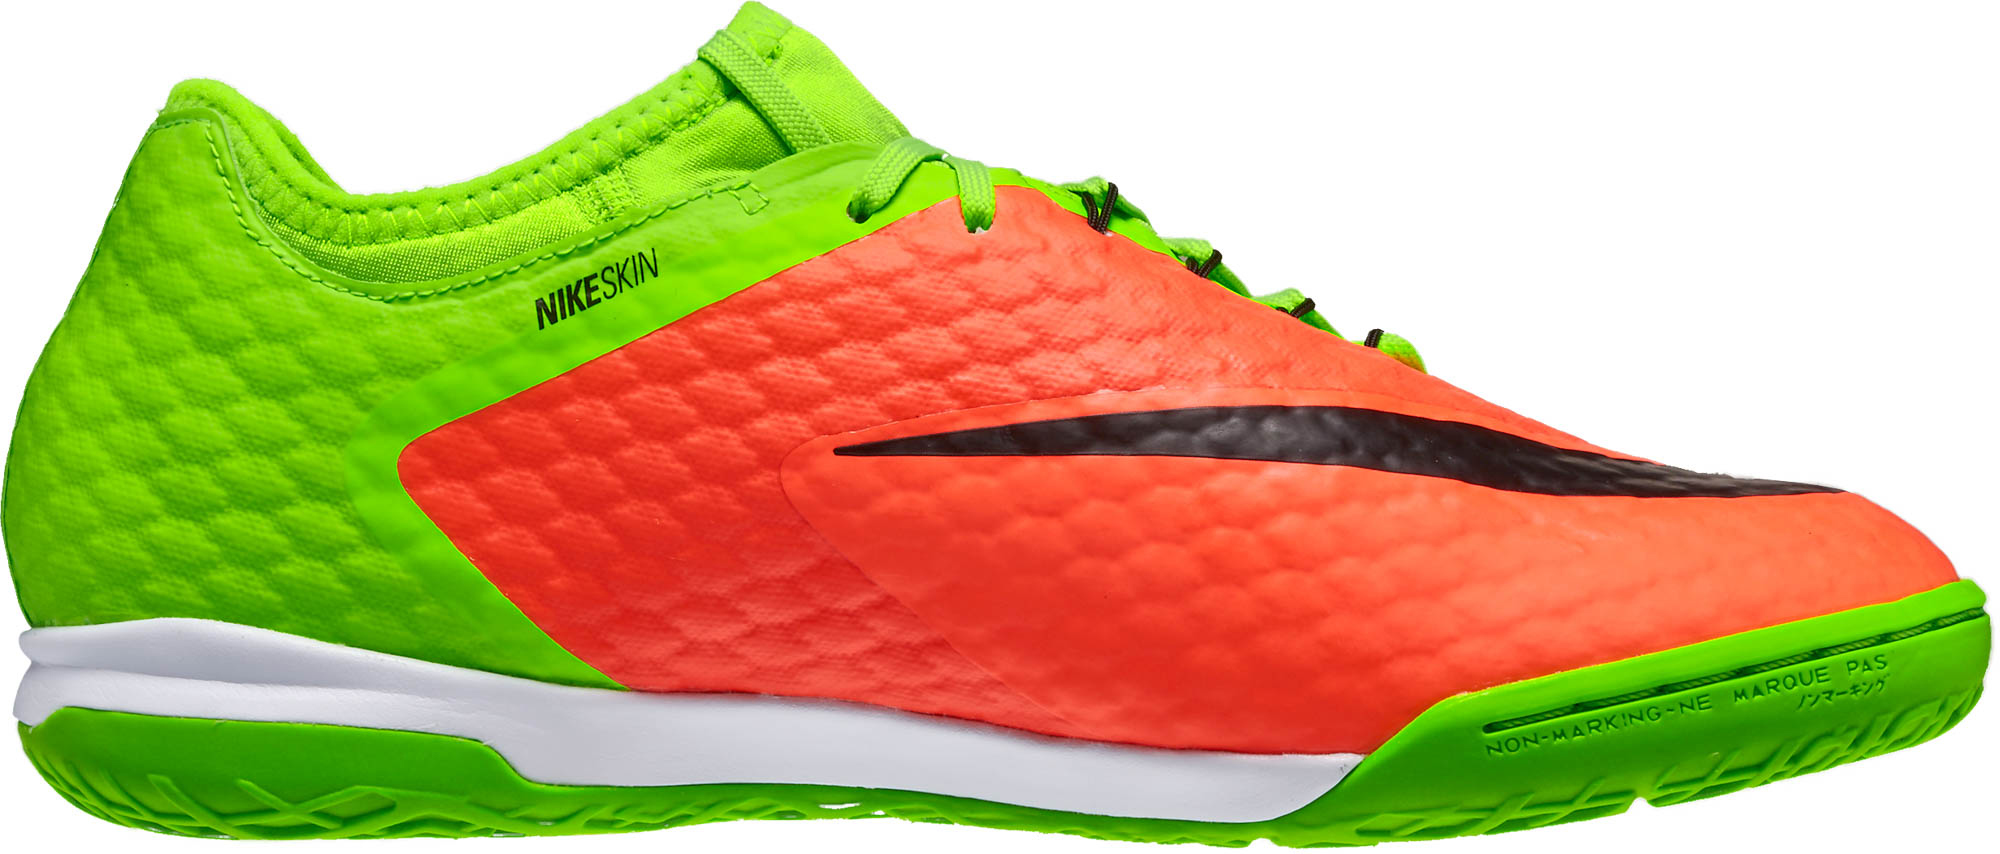 Quinto calina obturador Nike HypervenomX Finale II Indoor Soccer Shoes - SoccerPro.com